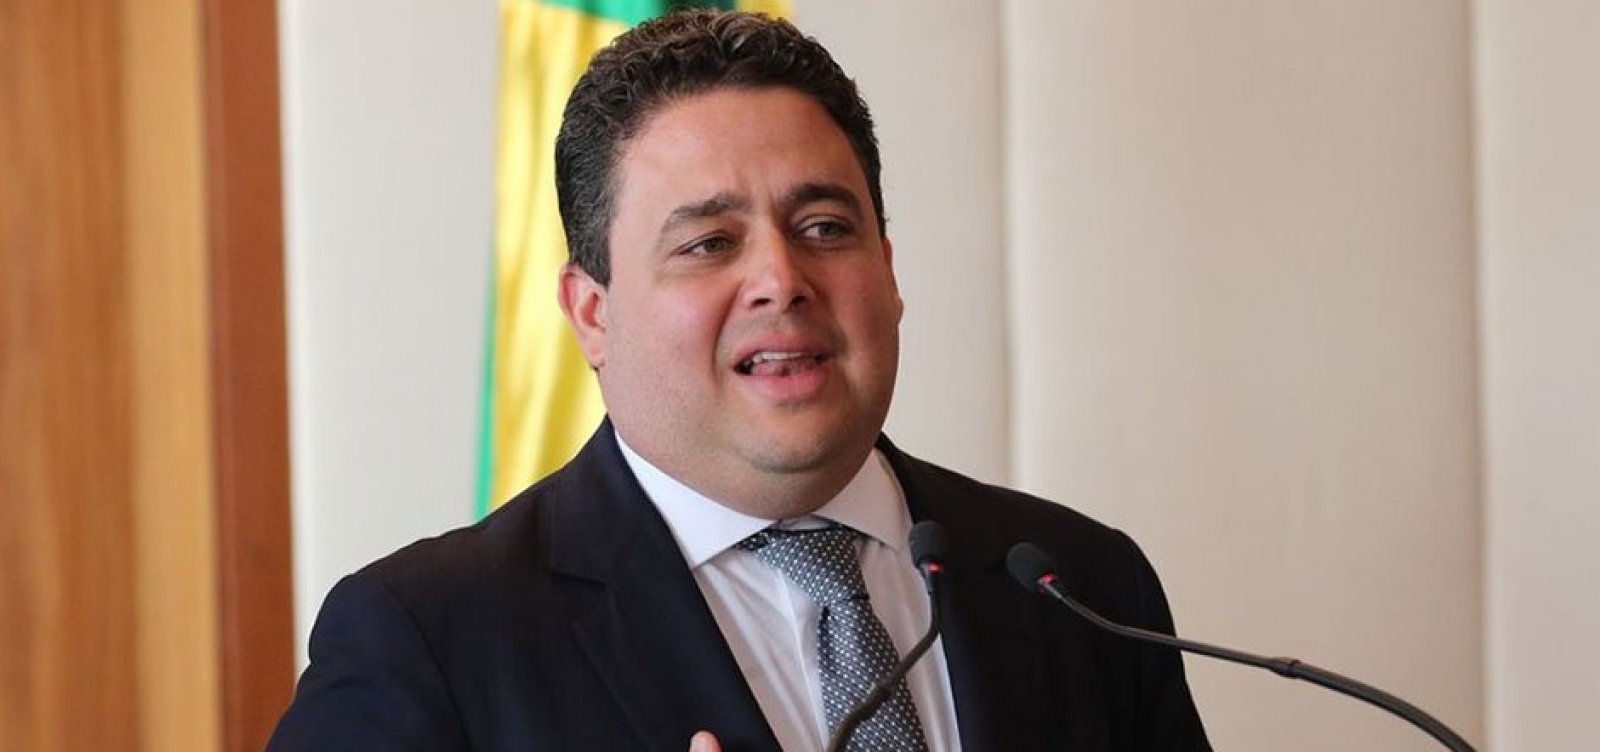 OAB diz ser ‘execrável’ pedido da PF para fazer buscas em escritório de advogado de Lula